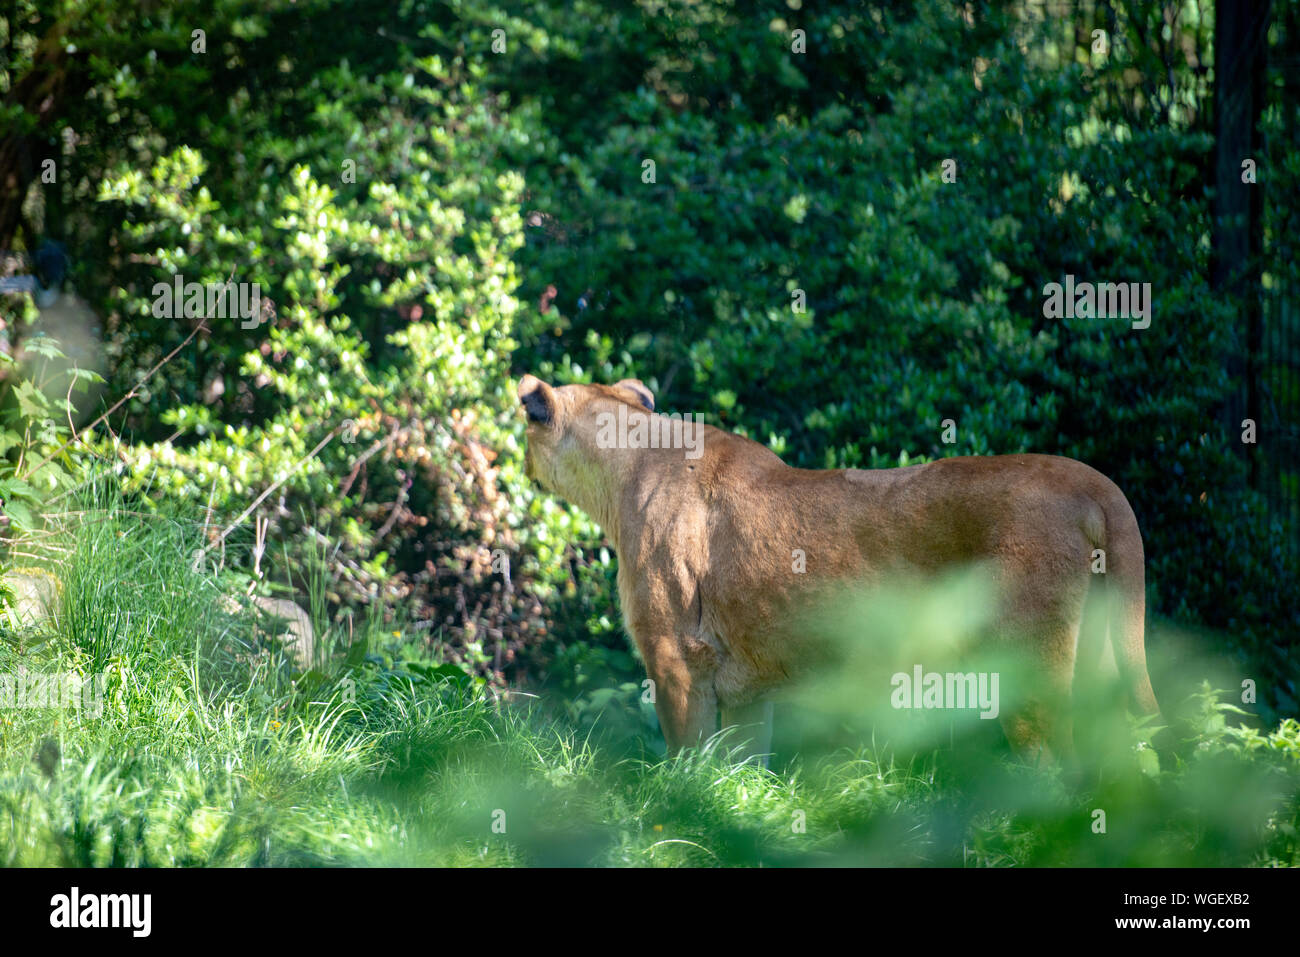 Leone femmina passeggiate nel verde della foresta in cerca di cibo Foto Stock